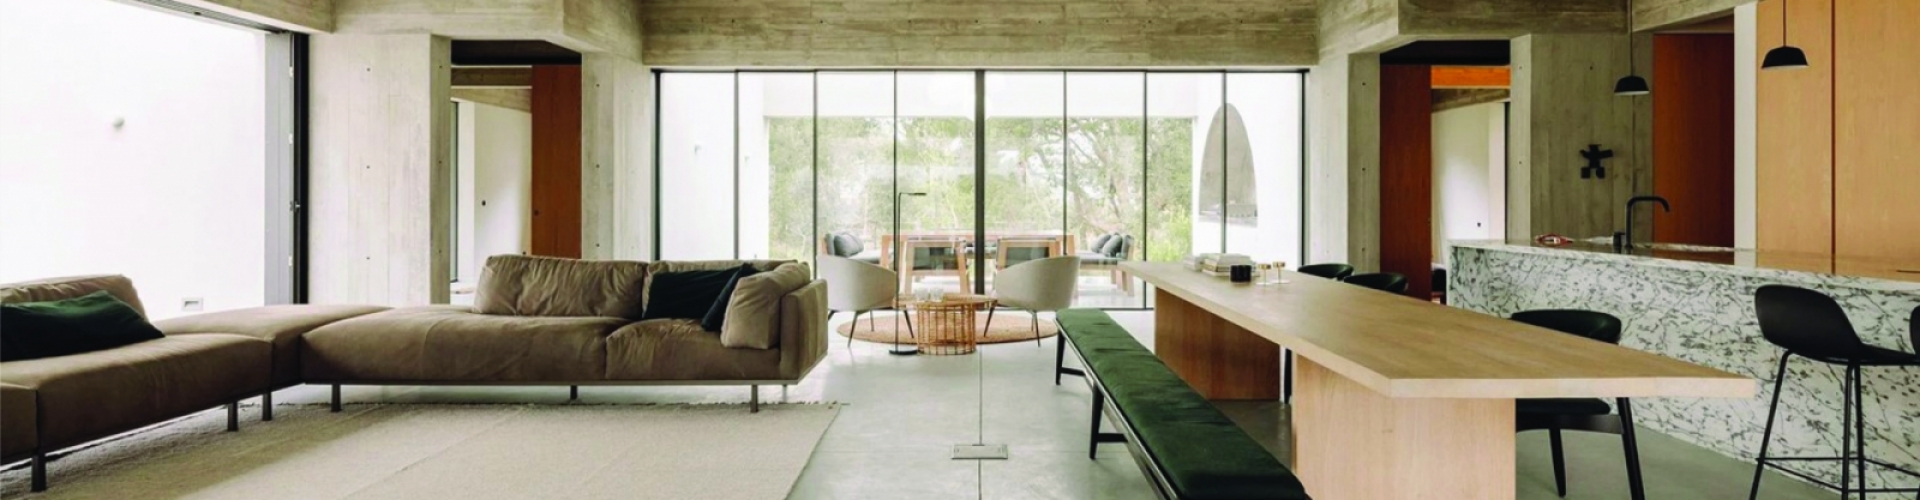 Tìm hiểu phong cách thiết kế nội thất hiện đại